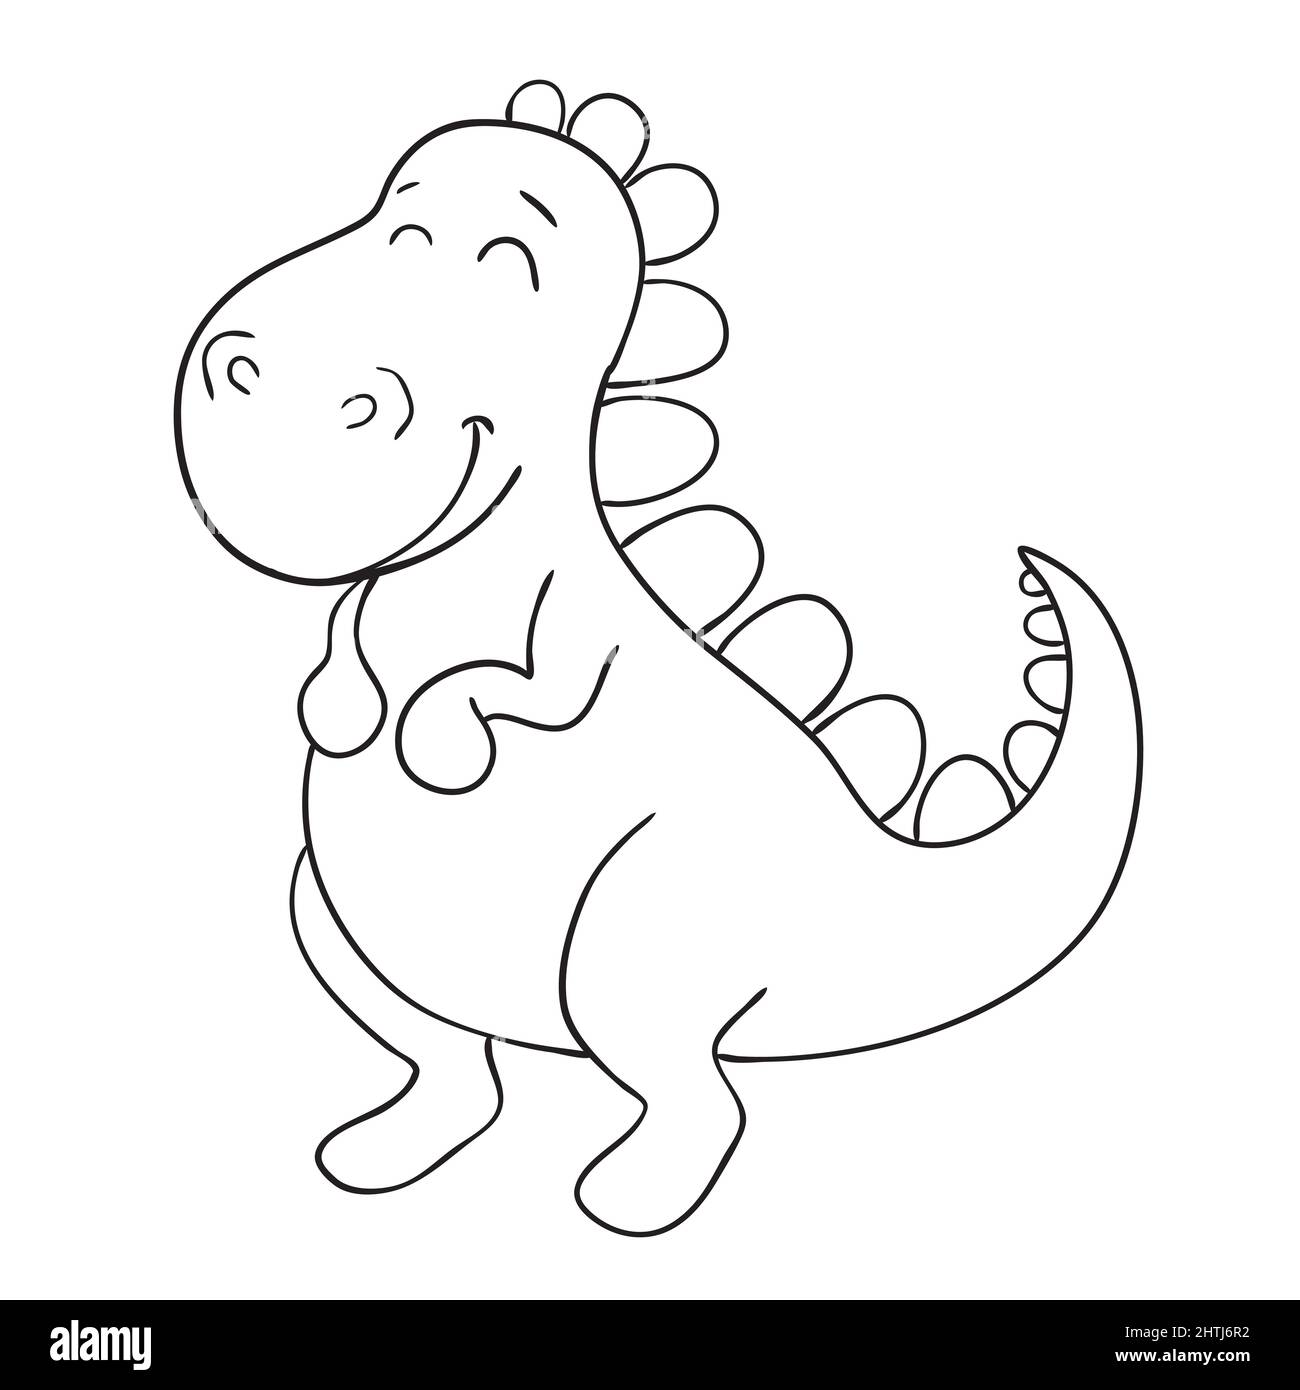 Dibujos animados de dinosaurios Imágenes de stock en blanco y negro - Alamy